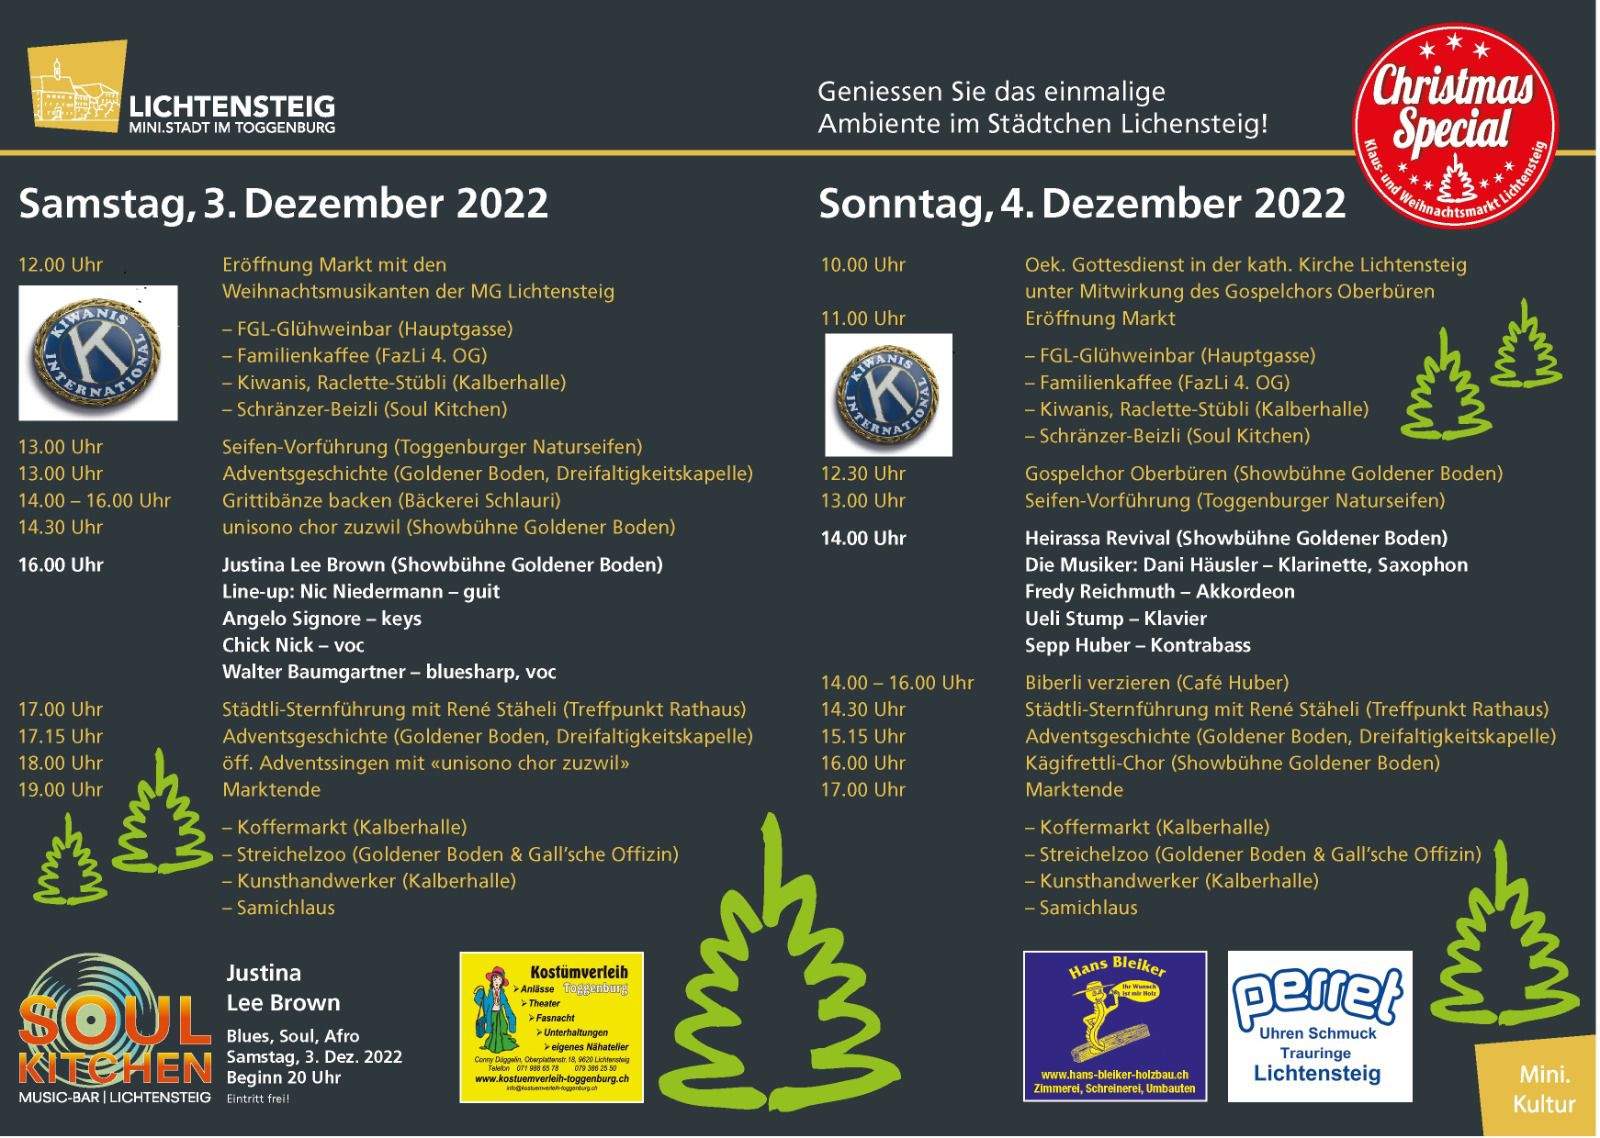 Der Kiwanis Club Wattwil-Toggenburg am Klaus- und Weihnachtsmarkt 2022 in Lichtensteig (3. & 4. Dezember)